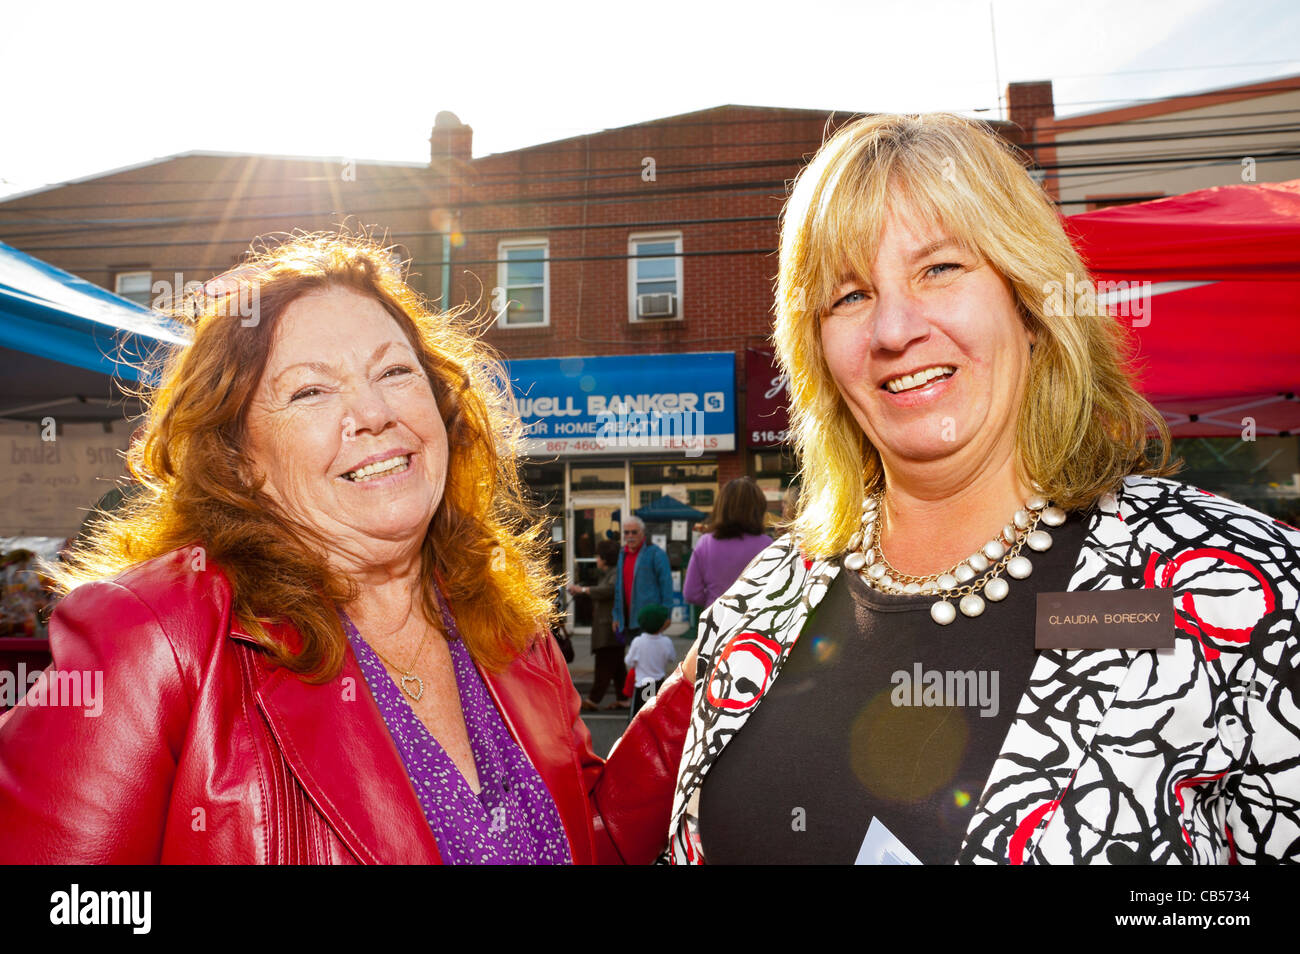 Ottobre 22, 2011 - MERRICK, NEW YORK: candidato locale Claudia Borecky (a destra), campagne a Merrick Street Fair, NY, STATI UNITI D'AMERICA. Foto Stock